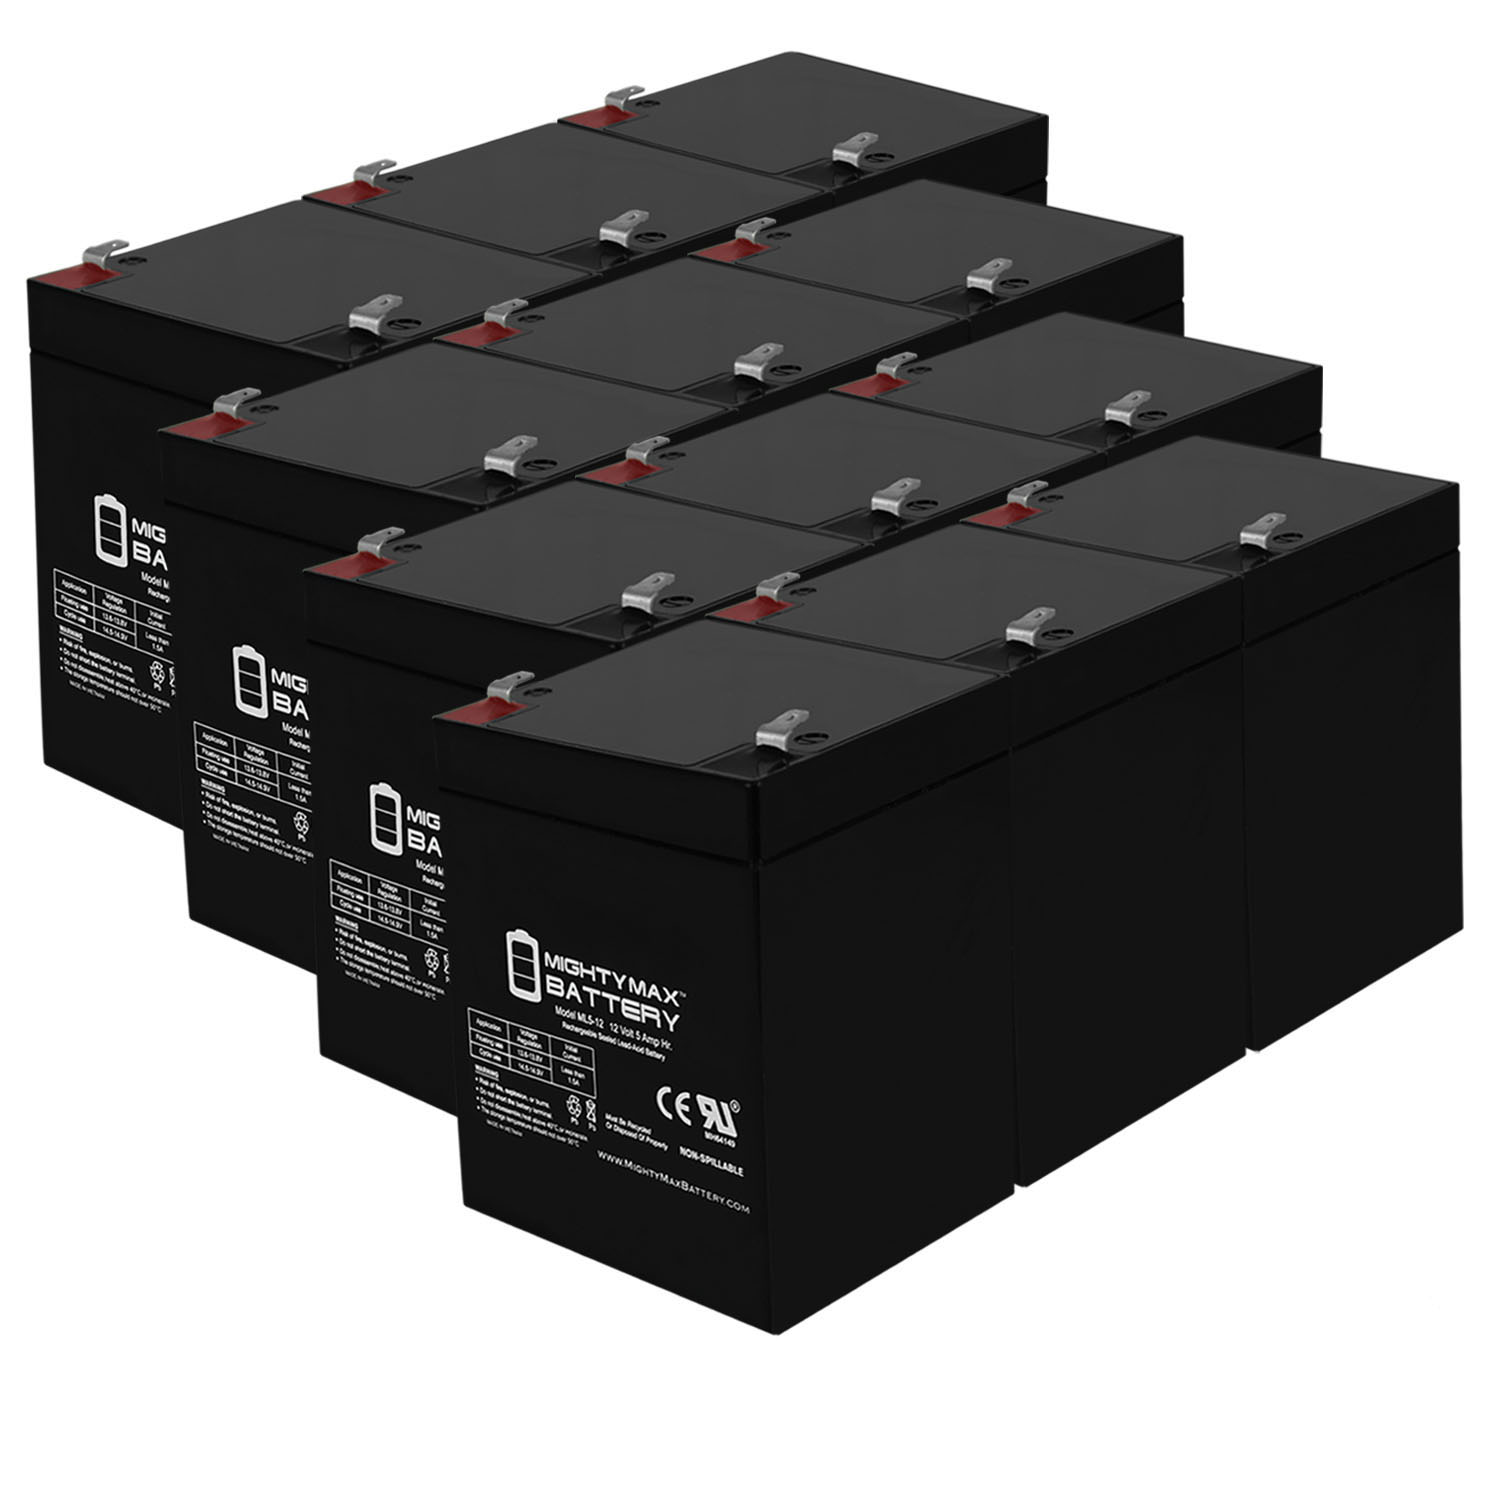 12V 5AH SLA Replacement Battery for Zoro Select 2UKK1 - 12 Pack